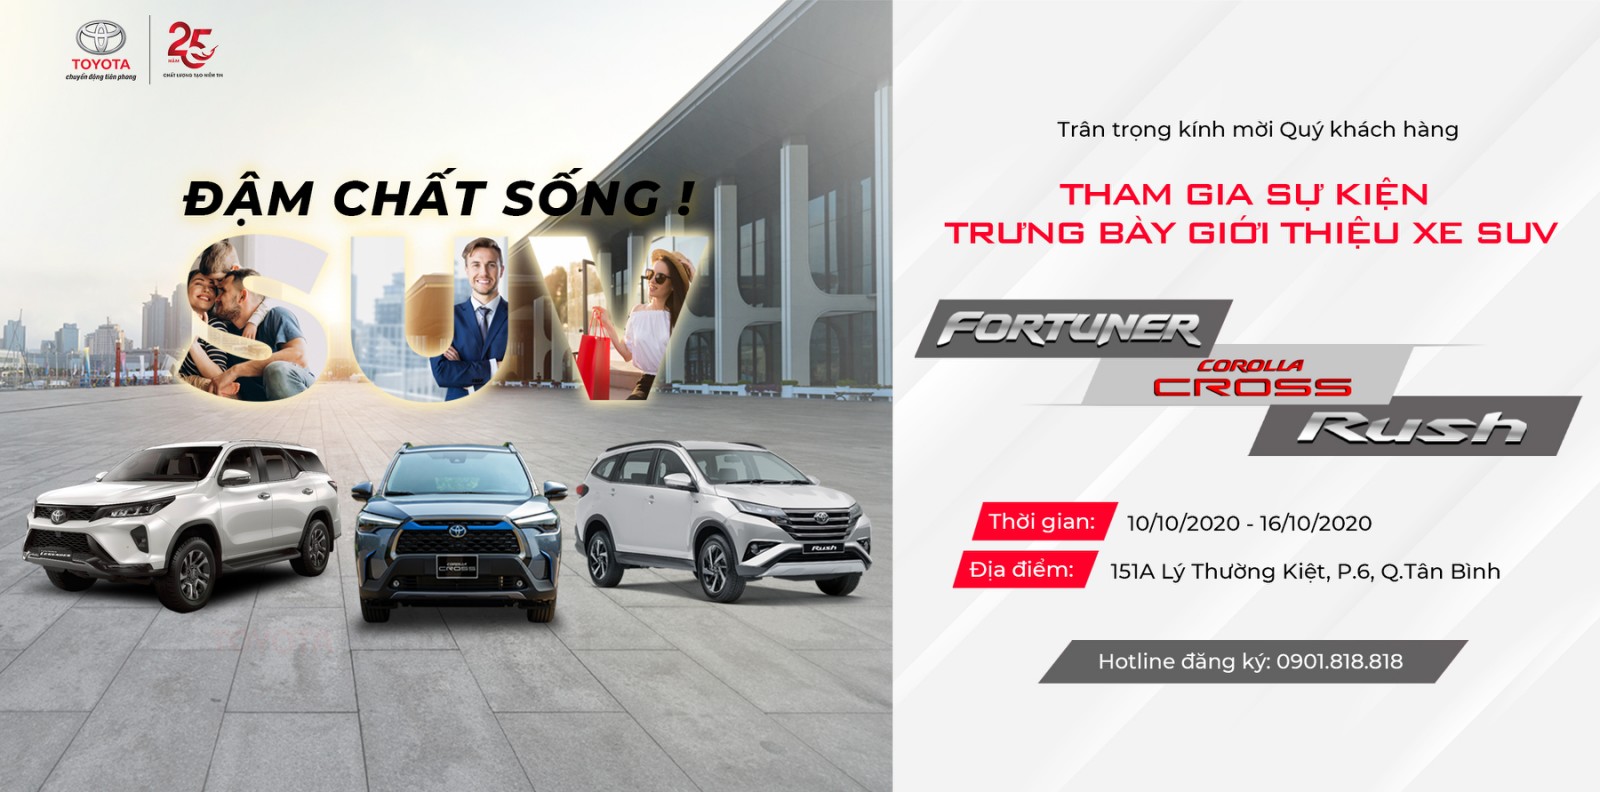 You are currently viewing Thư mời tham dự sự kiện trưng bày và giới thiệu xe SUV tại Toyota Lý Thường Kiệt